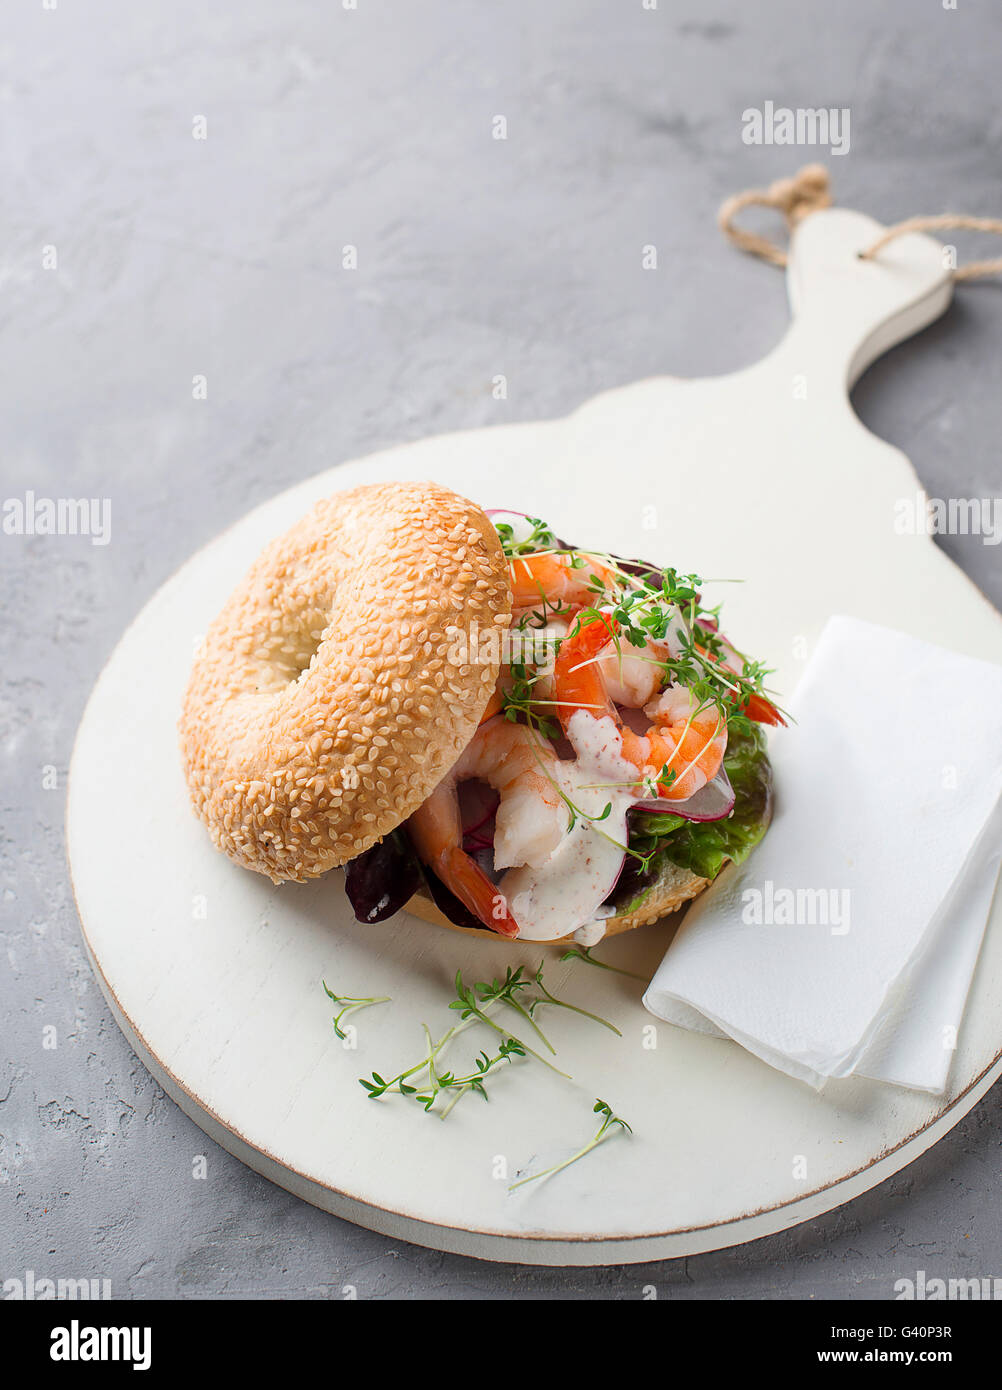 Bagel with shrimp and radish Stock Photo